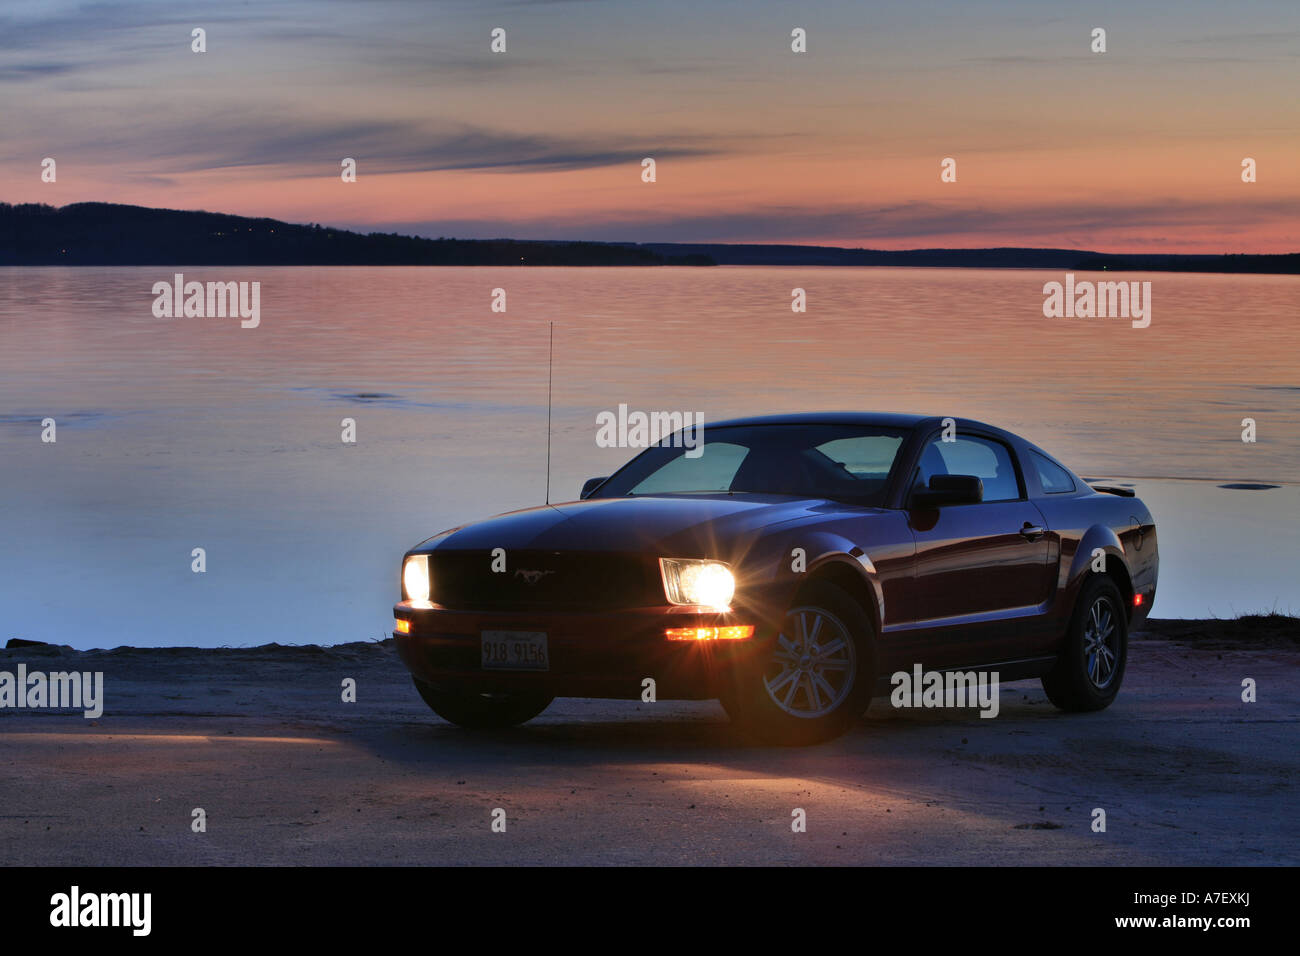 Ford Mustang Sports Car at Sunrise at Lake Superior Stock Photo